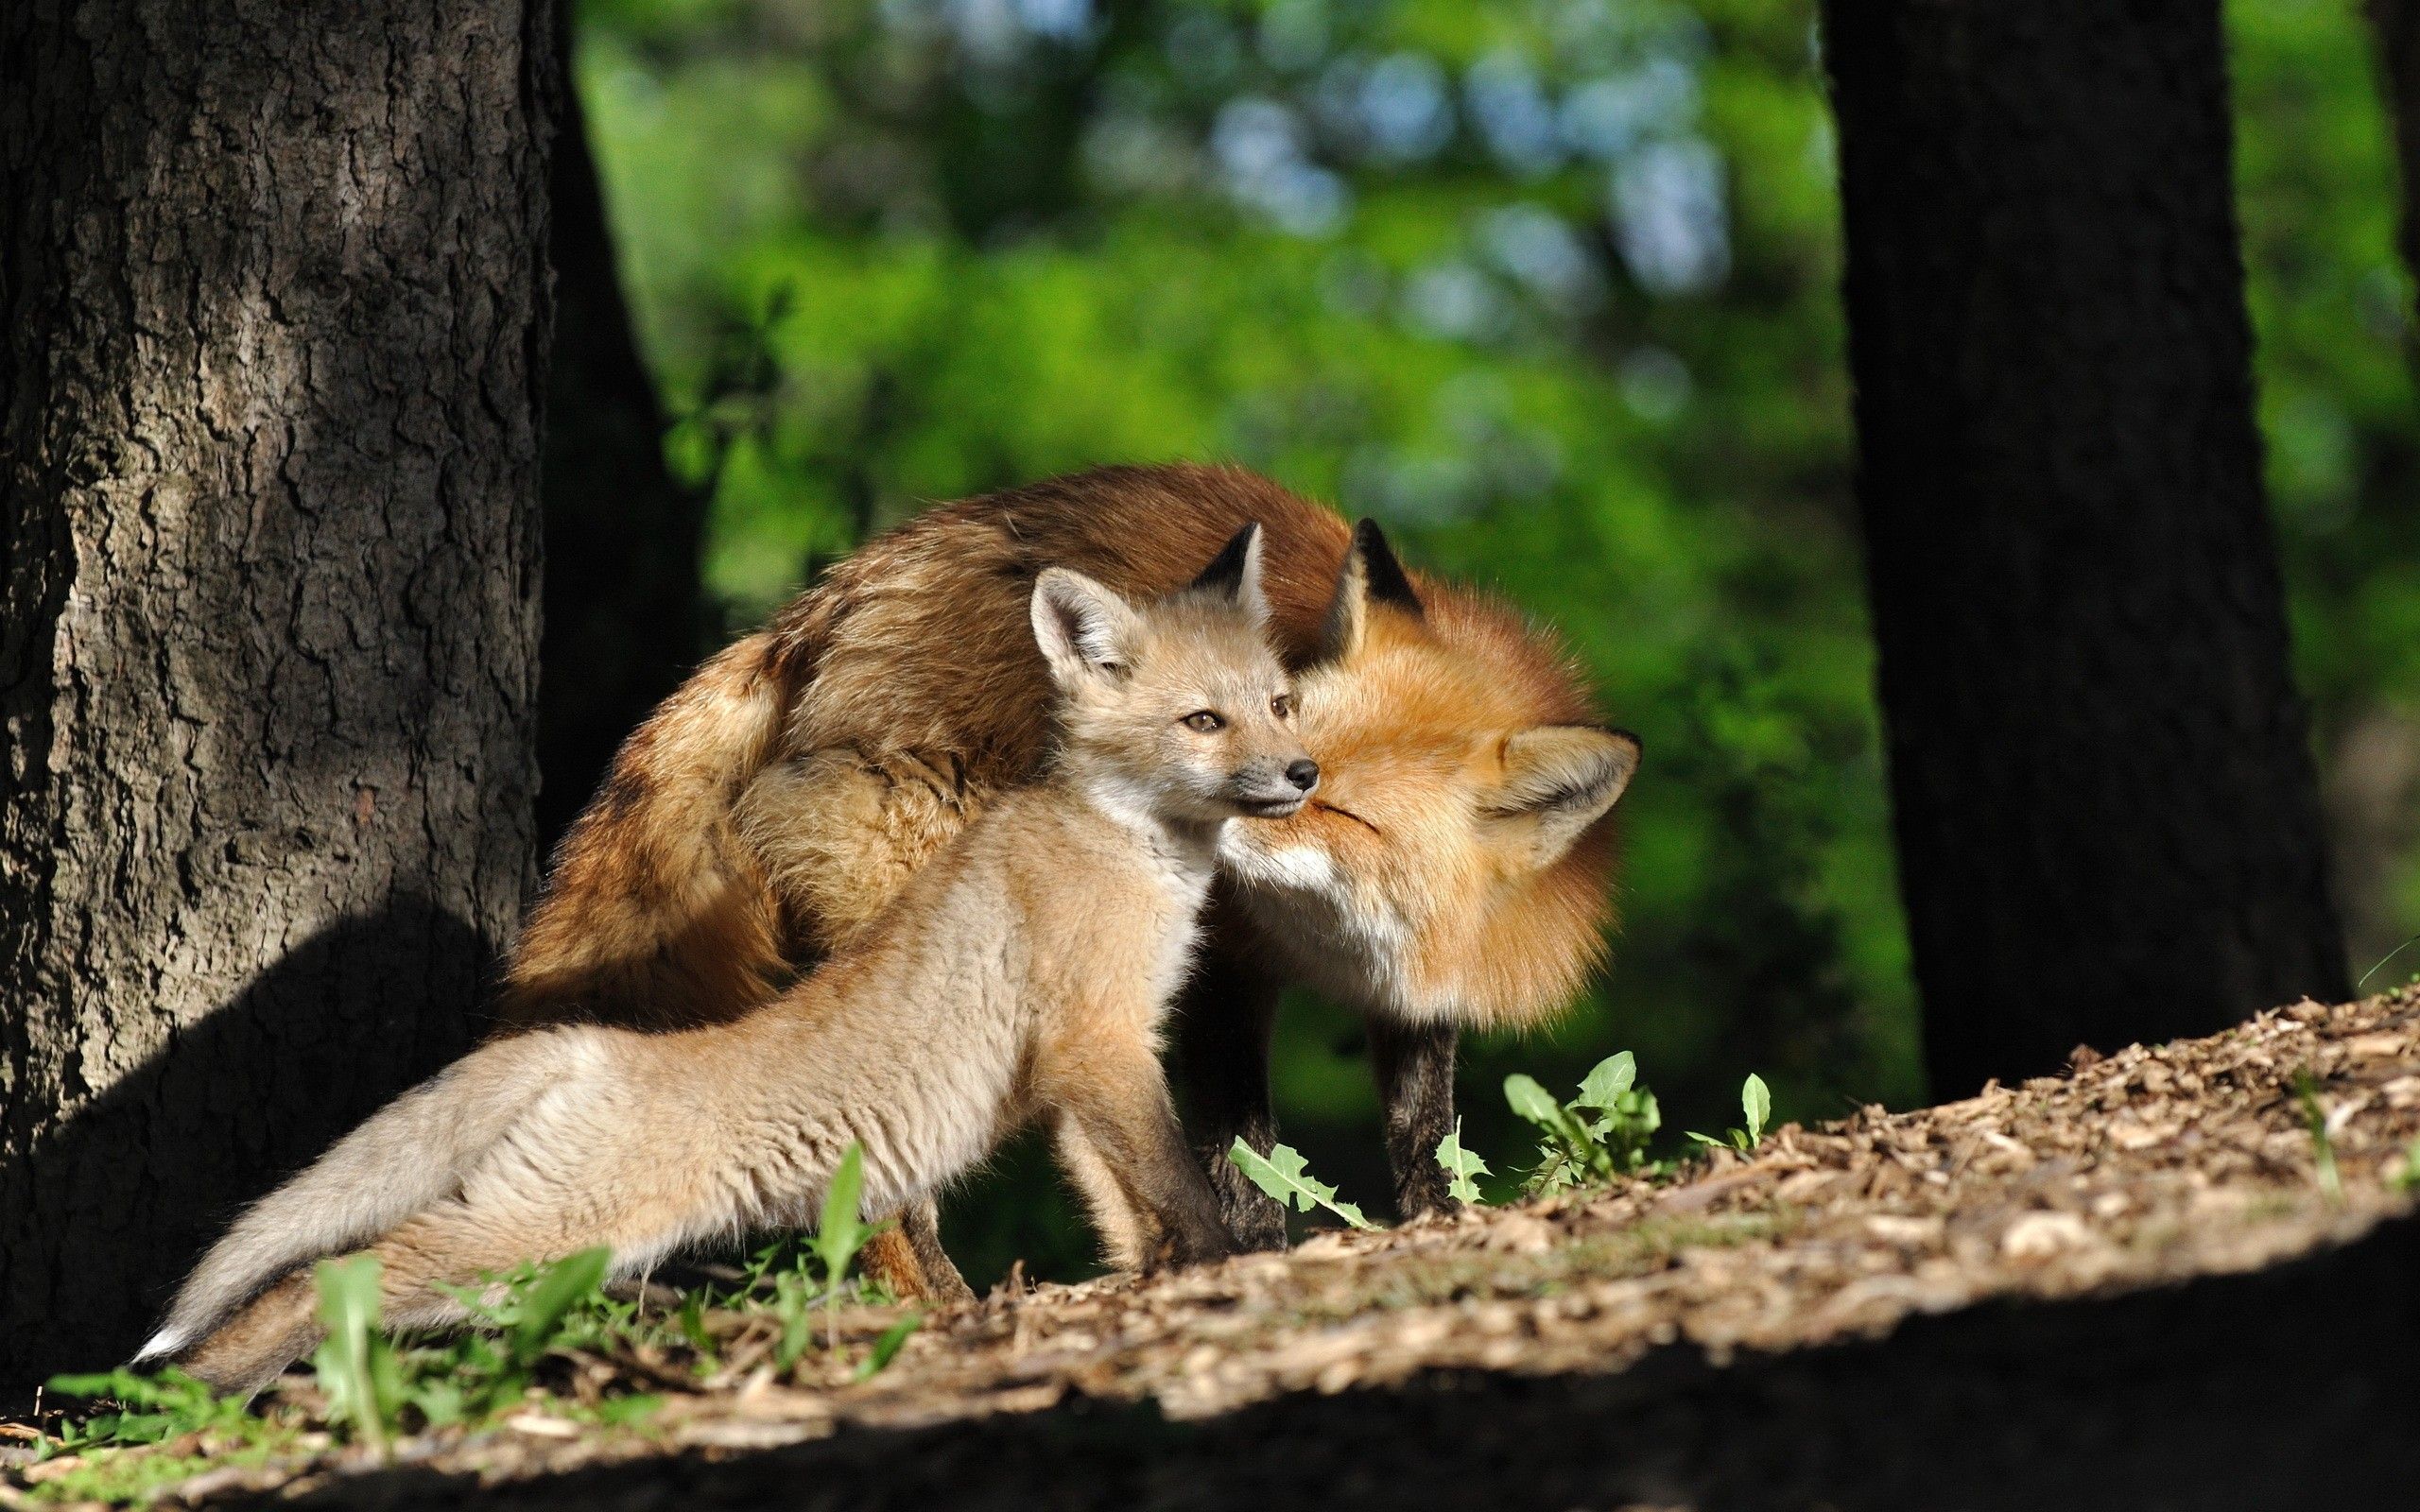 جالب ترین تصویر روباه مادر و بچه در کنار هم